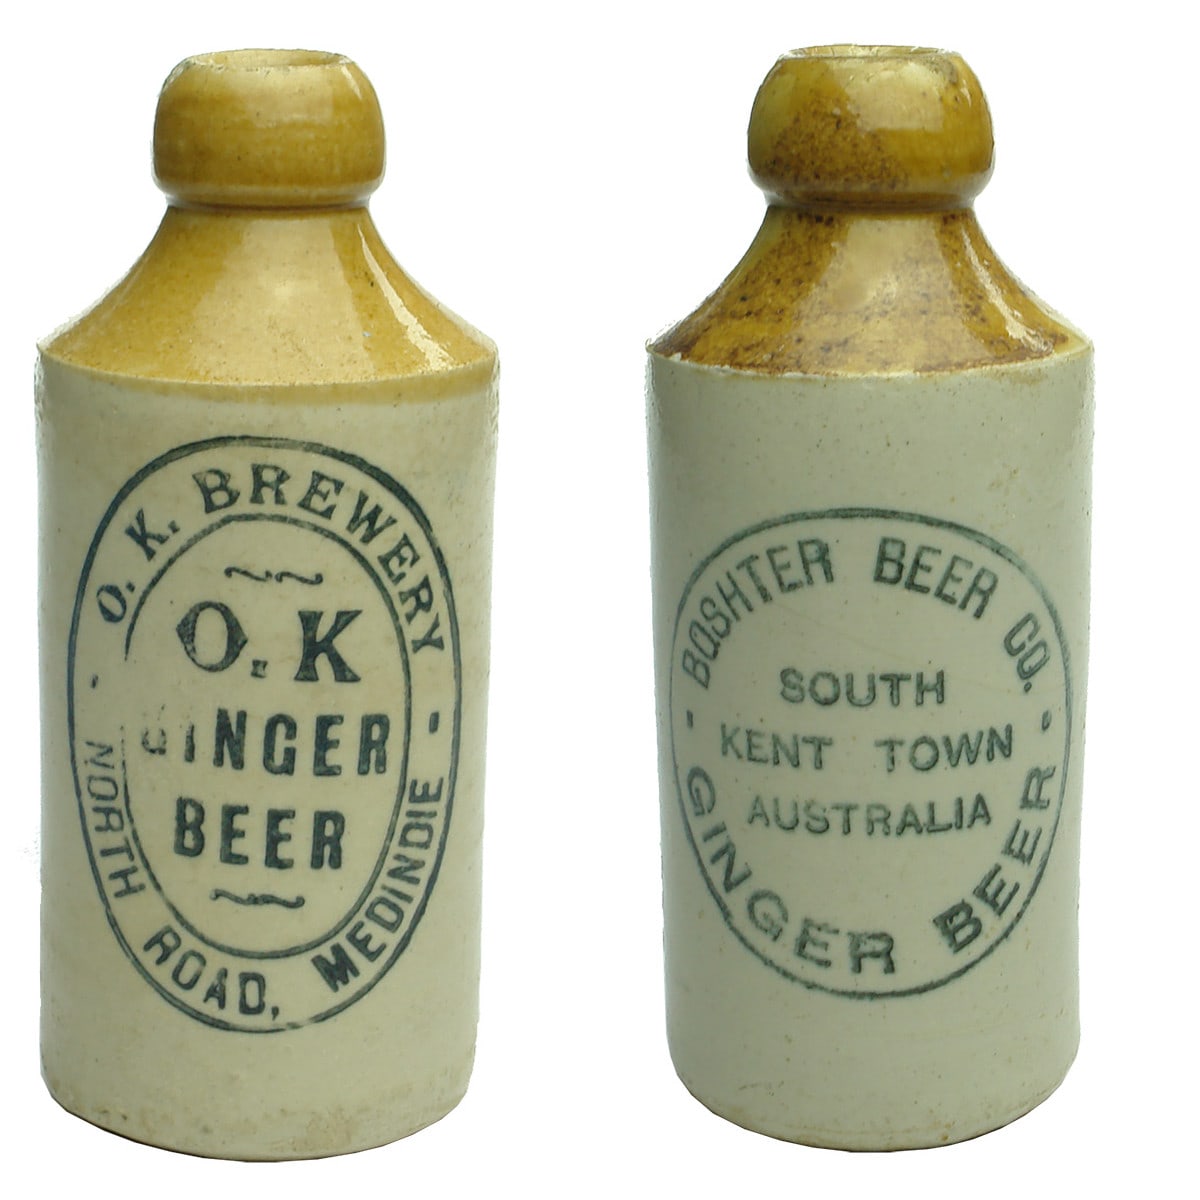 2 Ginger Beers. OK Brewery, Medindie; Boshter Beer Co., Kent Town. (South Australia)